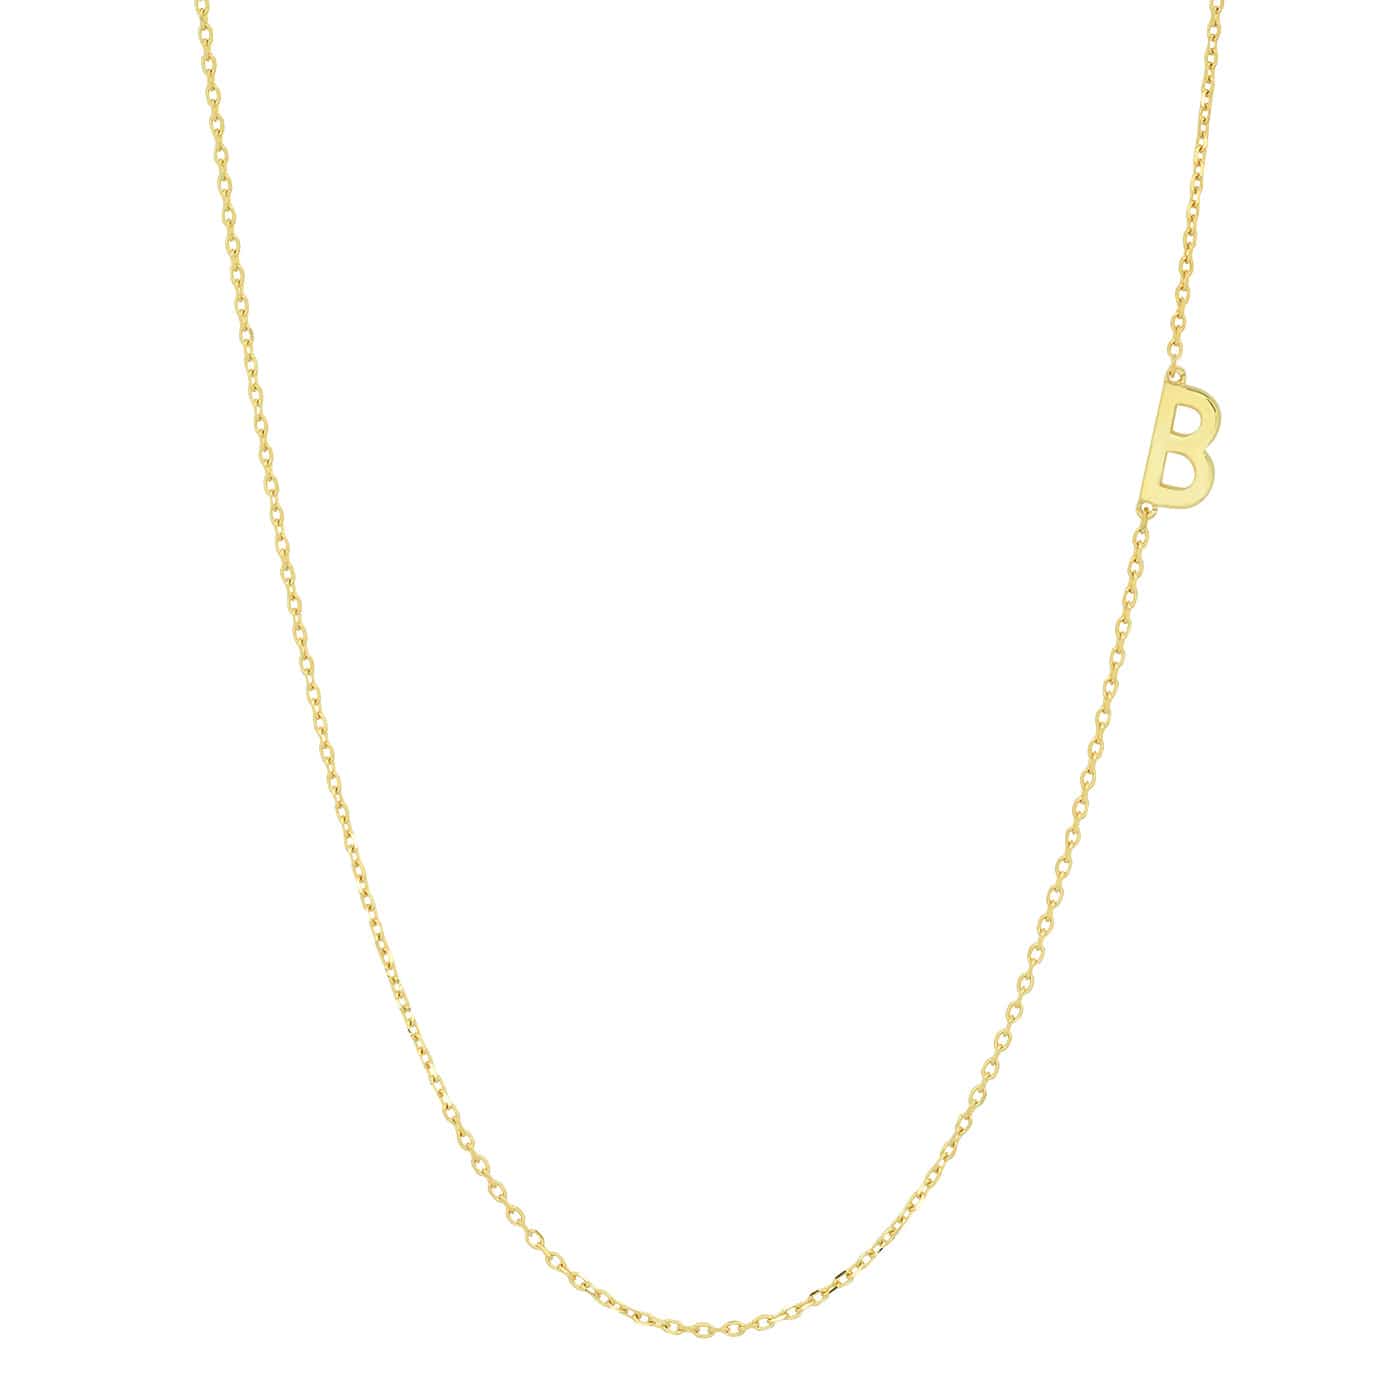 TAI JEWELRY Necklace B 14k Sideways Monogram Necklace